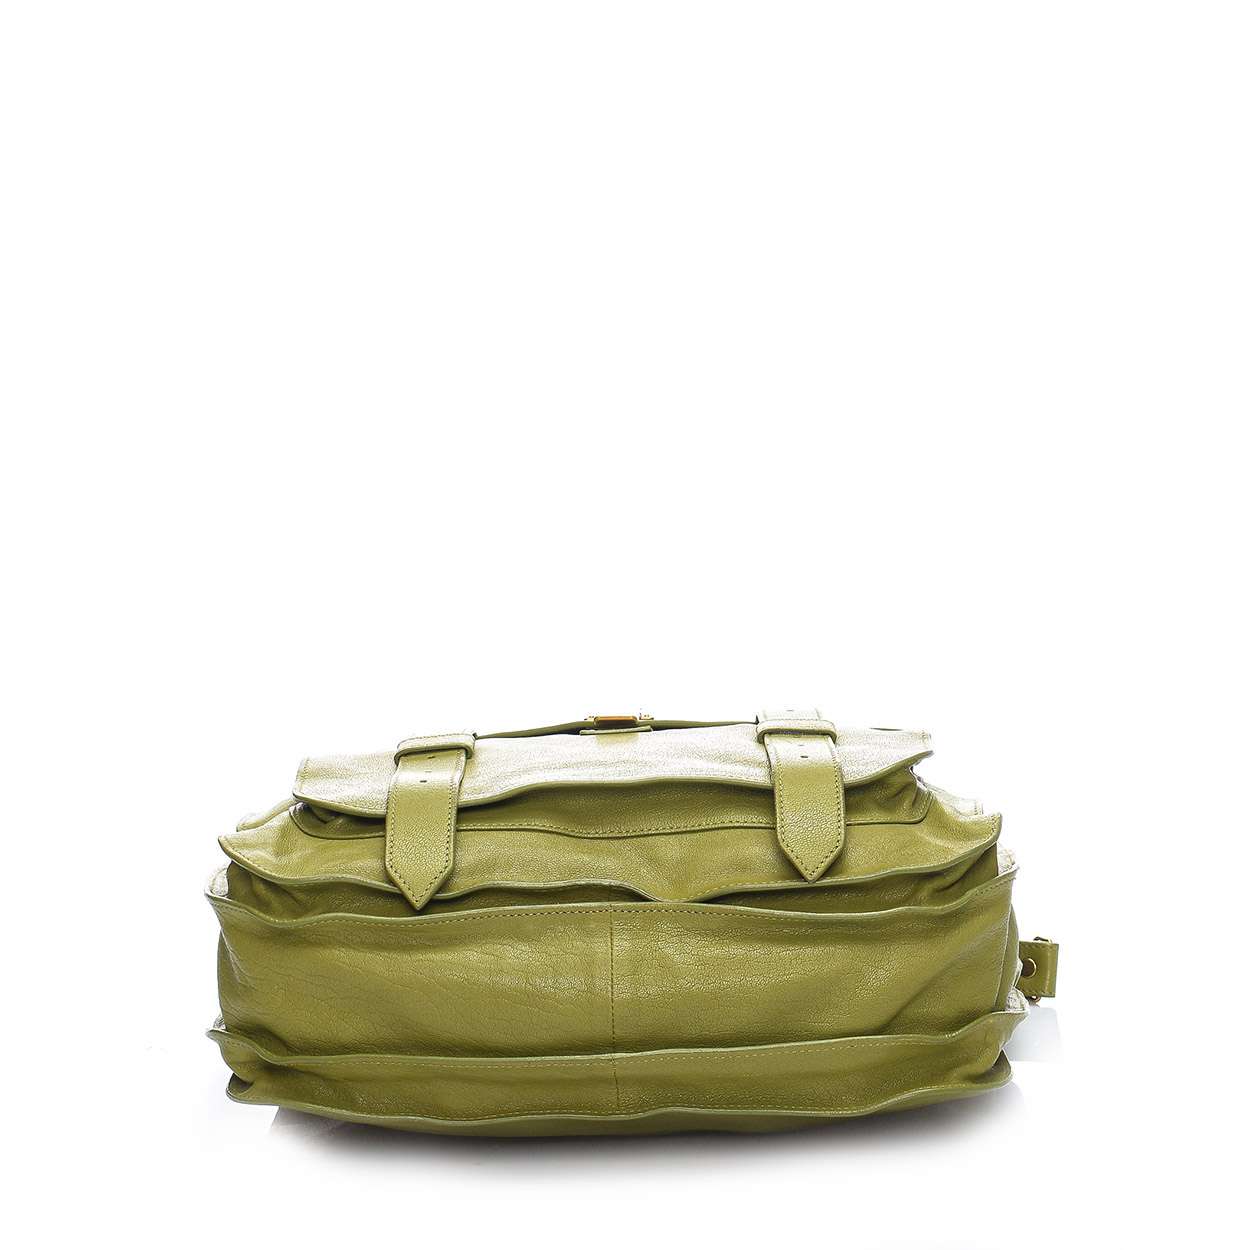 Proenza Schouler - Green Leather Ps1 Satchel Bag